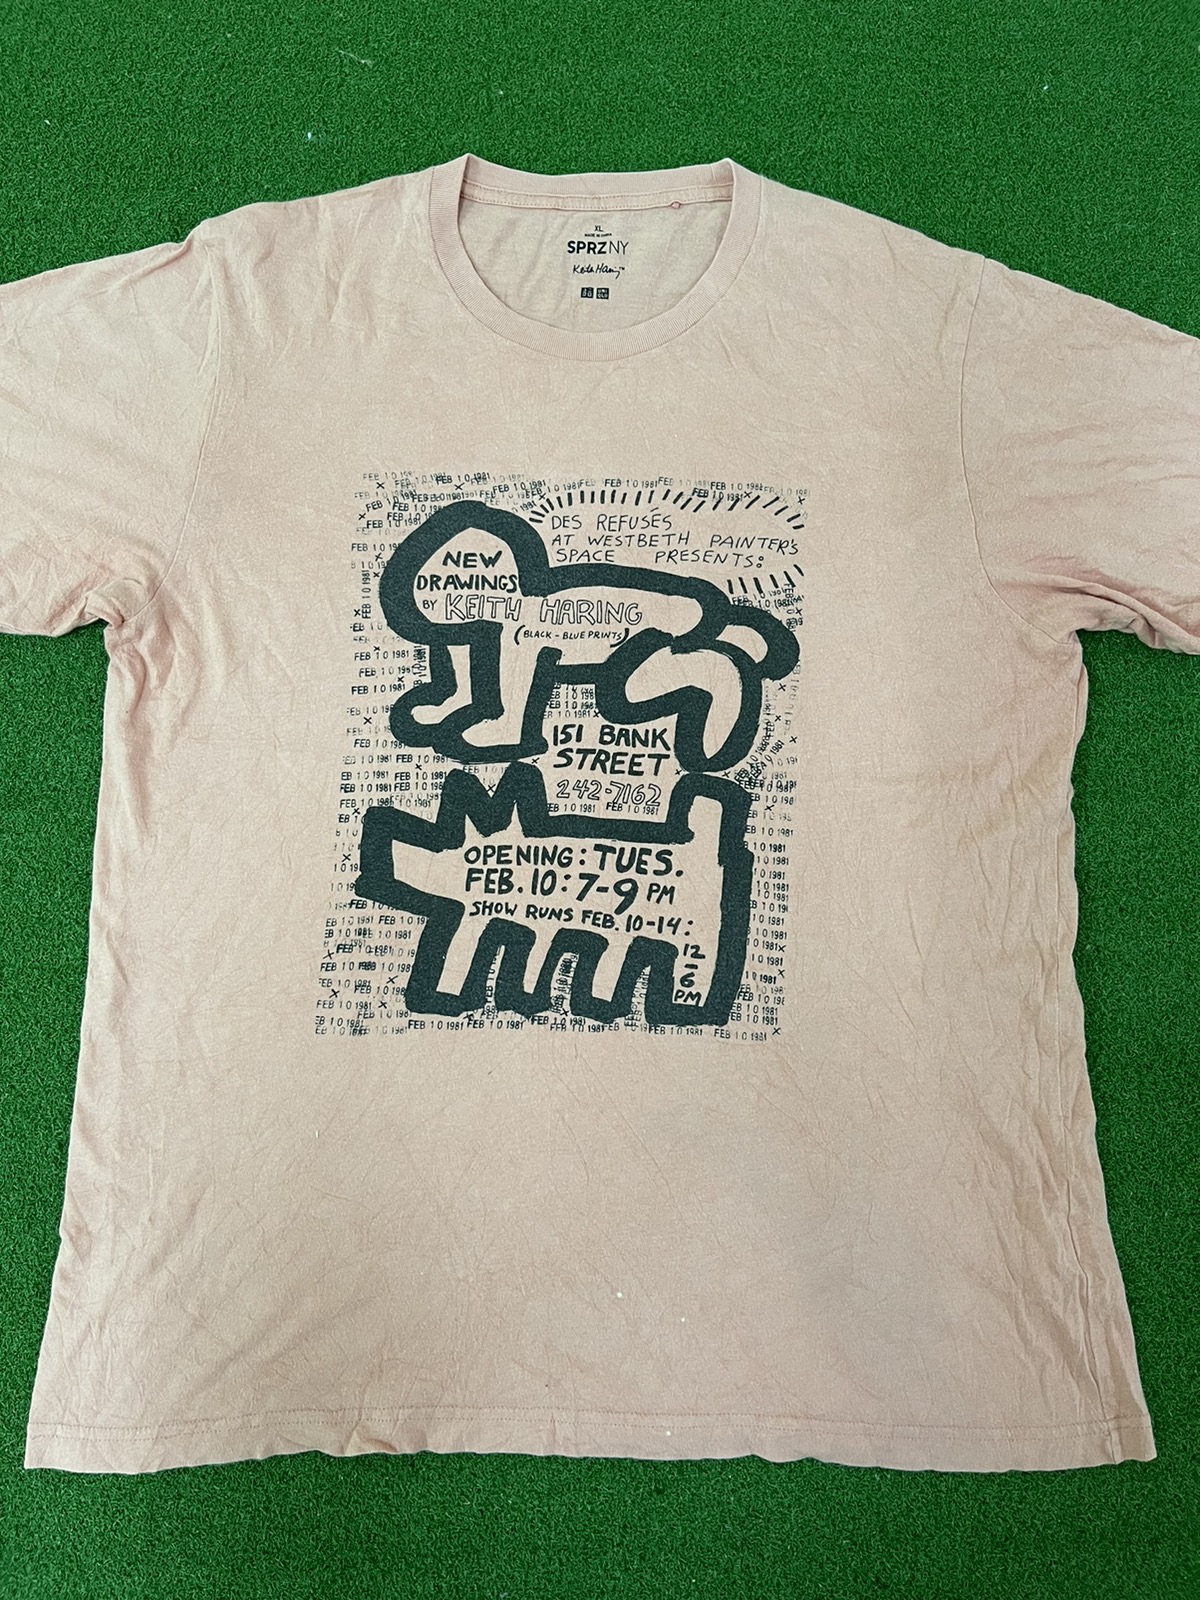 Jason - Uniqlo Keith Haring Party Of Life Tee shirt / Eva / Murakami - 2